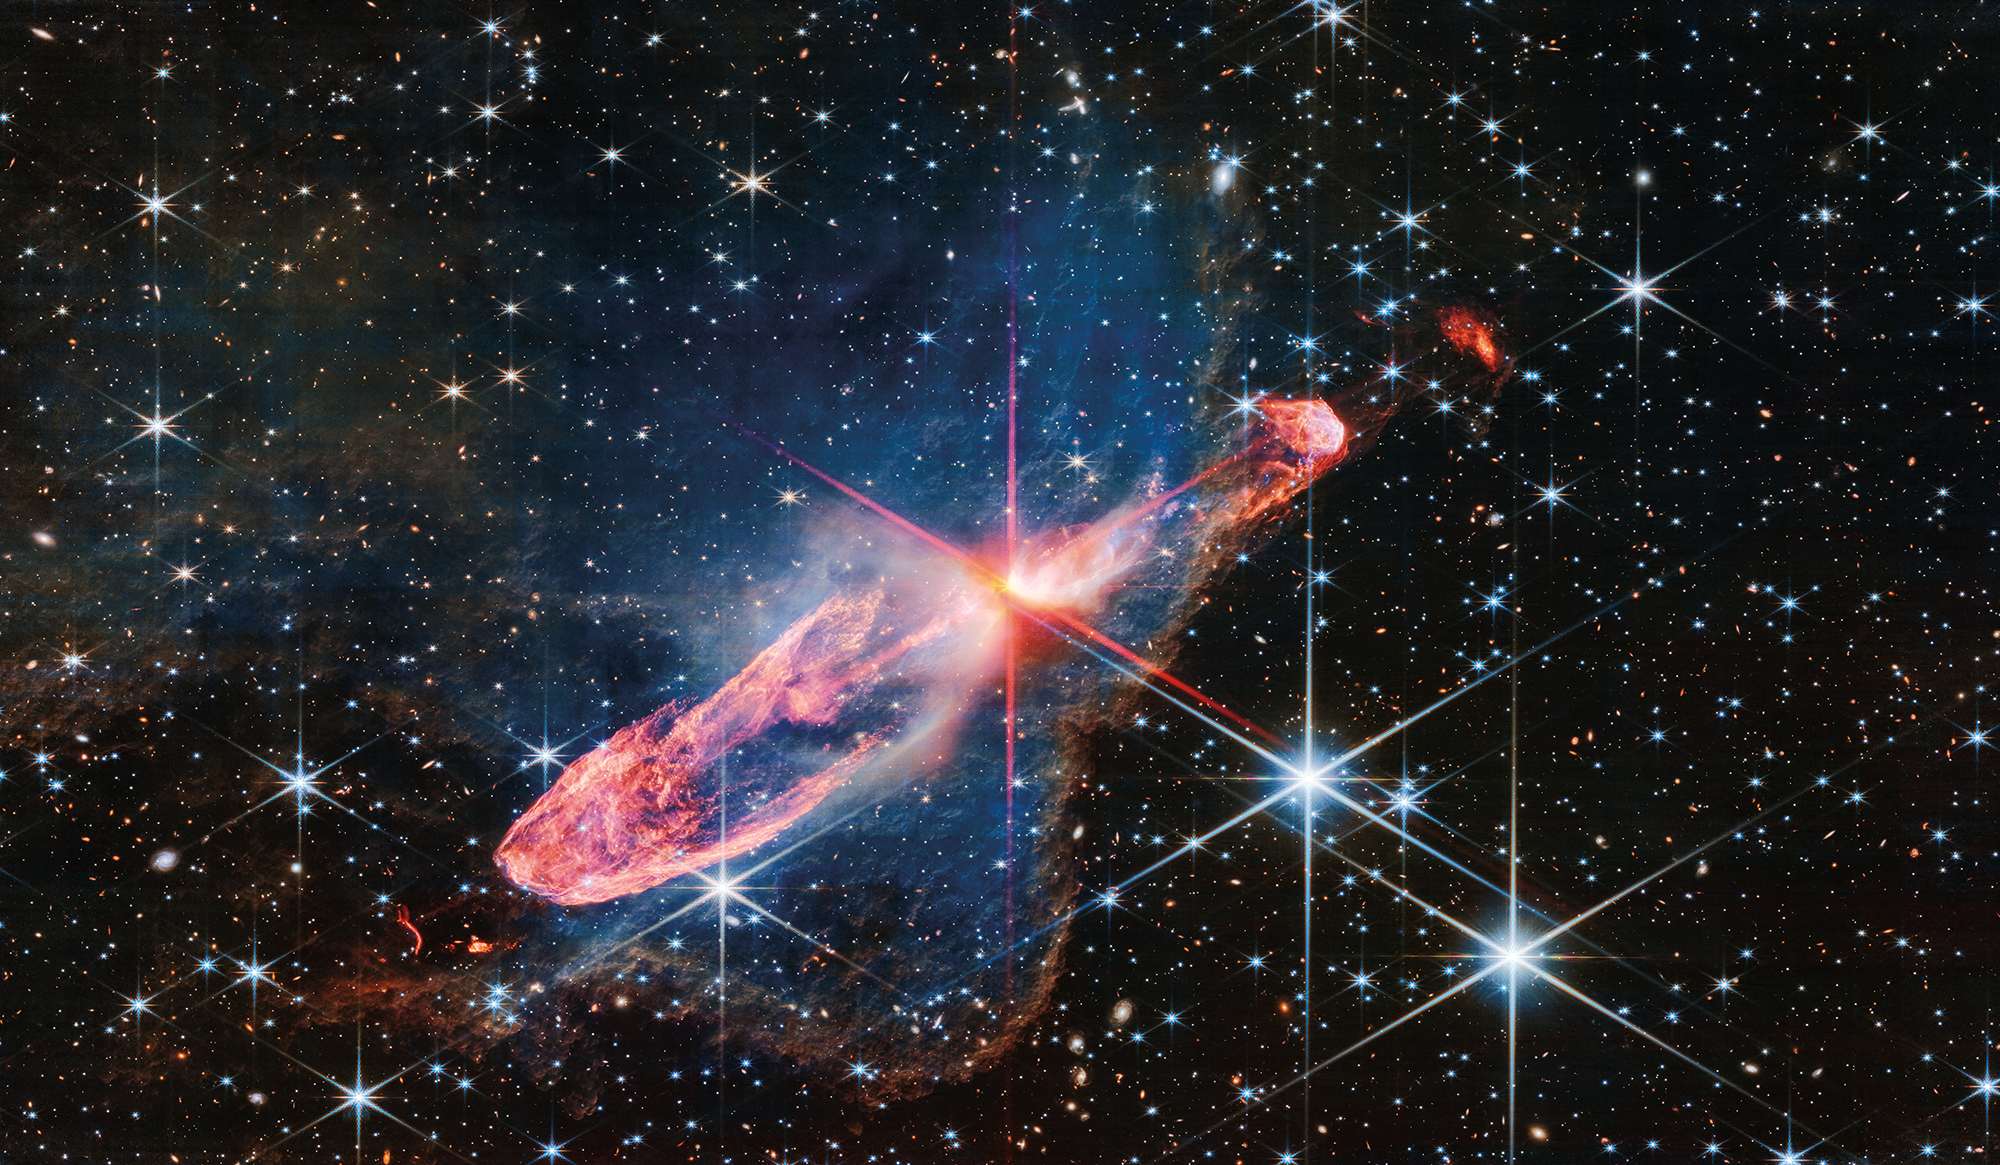 Фото, сделанное Уэббом в ближнем инфракрасном свете с высоким разрешением тесно связанной пары активно формирующихся звёзд, известной как Herbig-Haro 46/47